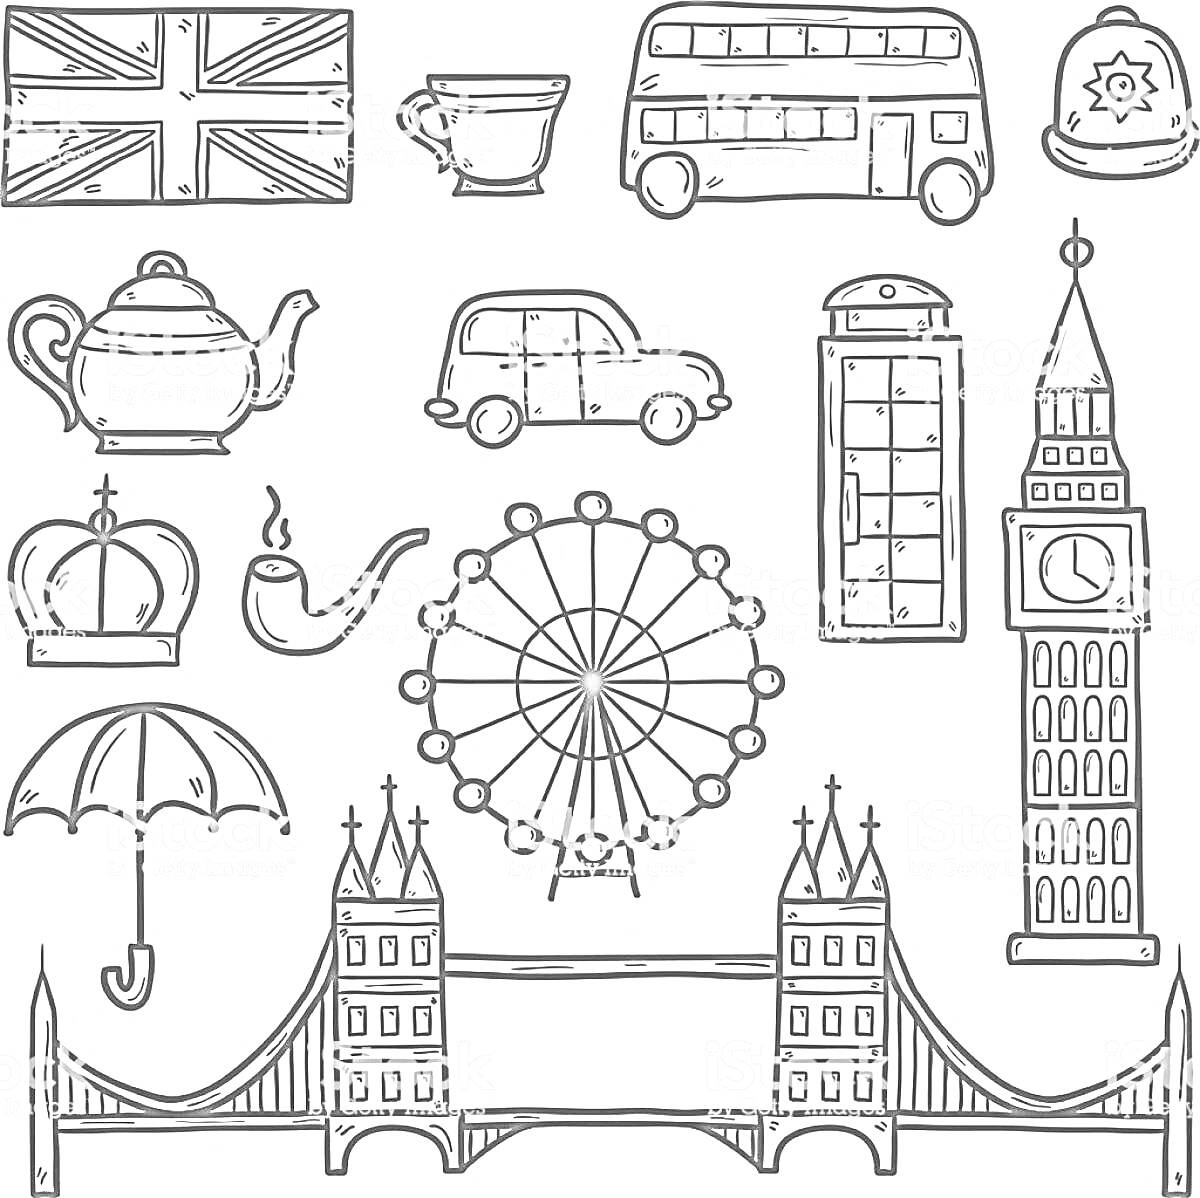 Флаг Великобритании, чашка, двухэтажный автобус, полицейская шапка, чайник, автомобиль, телефонная будка, Биг Бен, корона, трубка, колесо обозрения, зонт, Тауэрский мост.